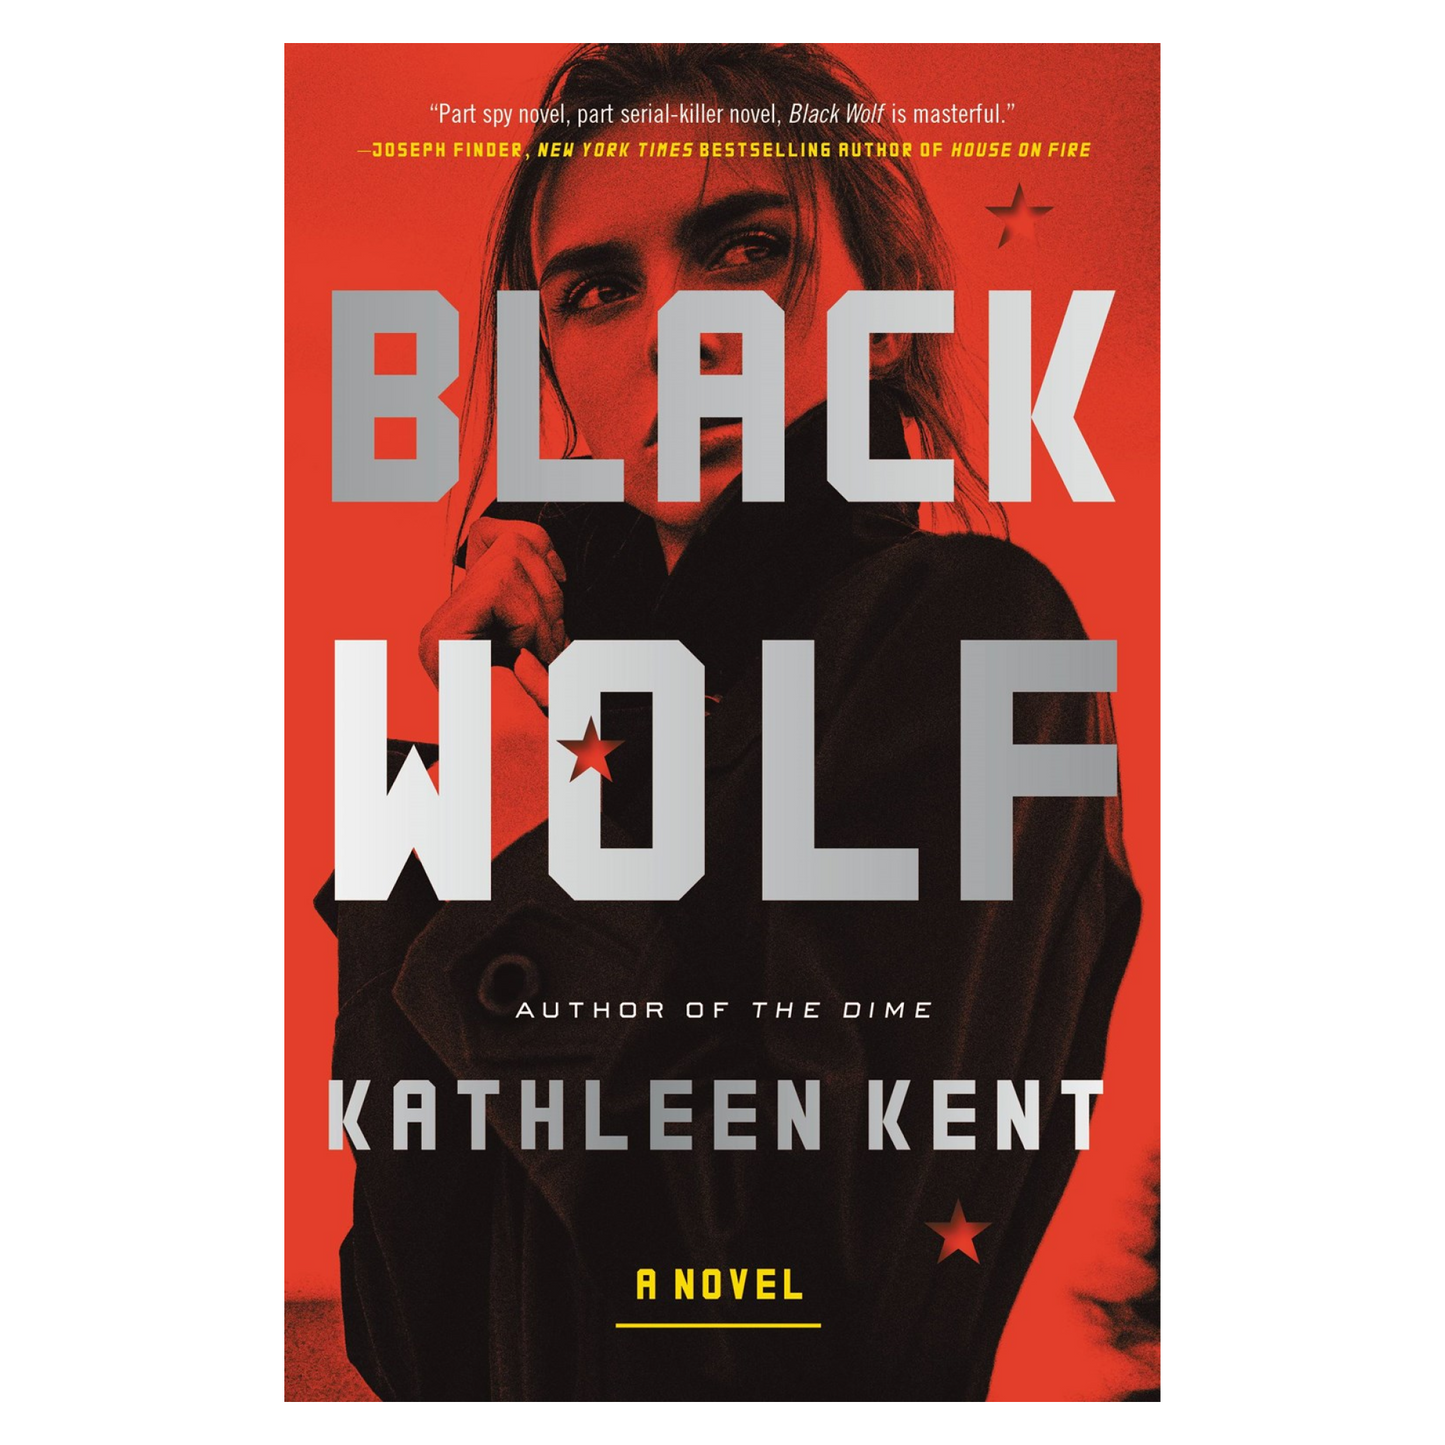 Black Wolf: A Novel